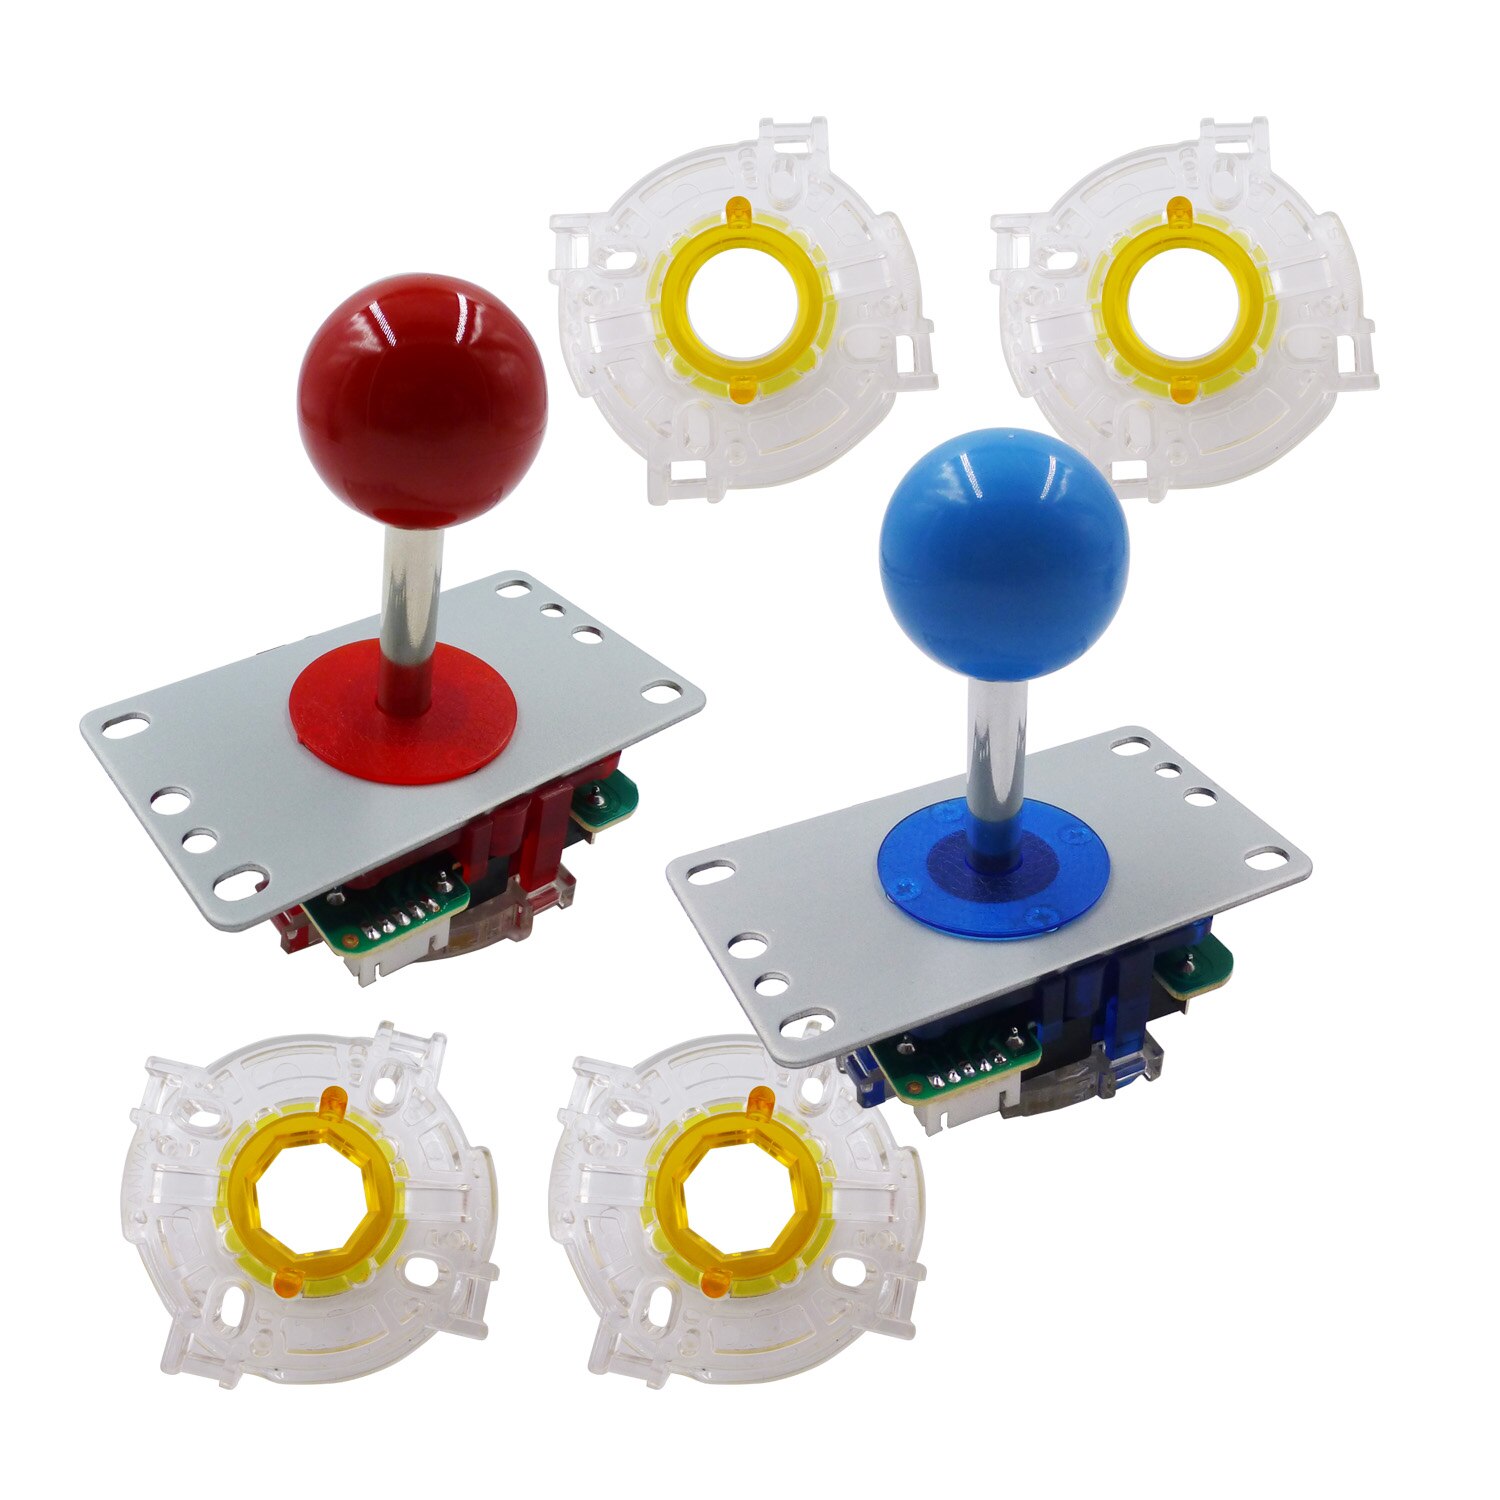 Sj@jx arkadspel joystick kit fight stick cirkulär åttakantig limiter för pc raspberry pi mame